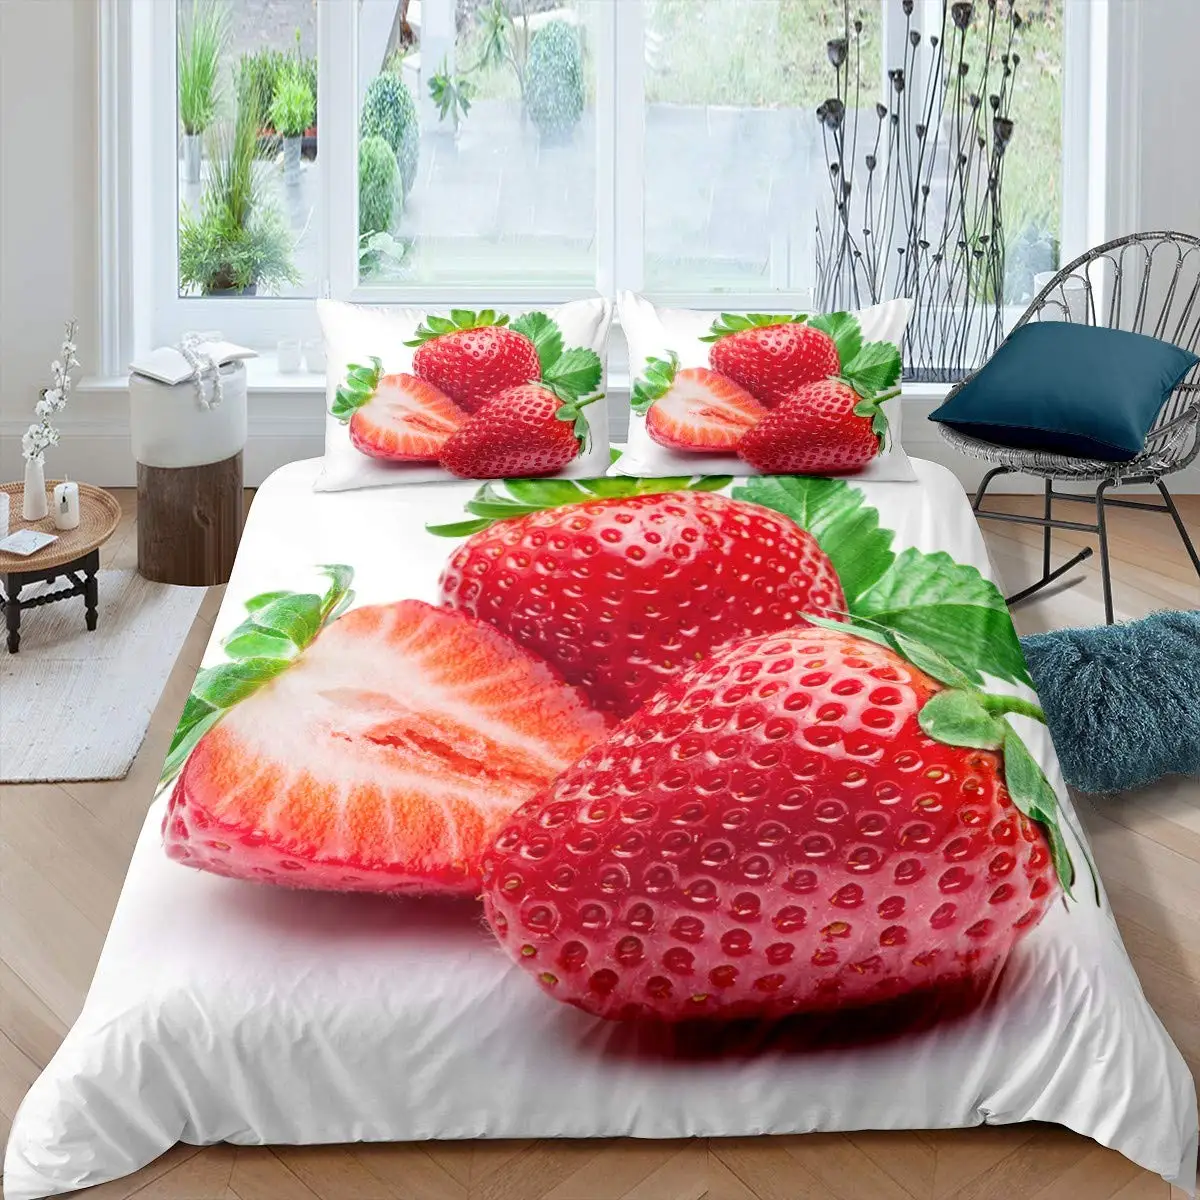 

Strawberry Duvet Cover Set Girl King Size Comforter Cover Set Red Strawberry Bedding Set Food Fruit Quilt Cover for Kids Gift